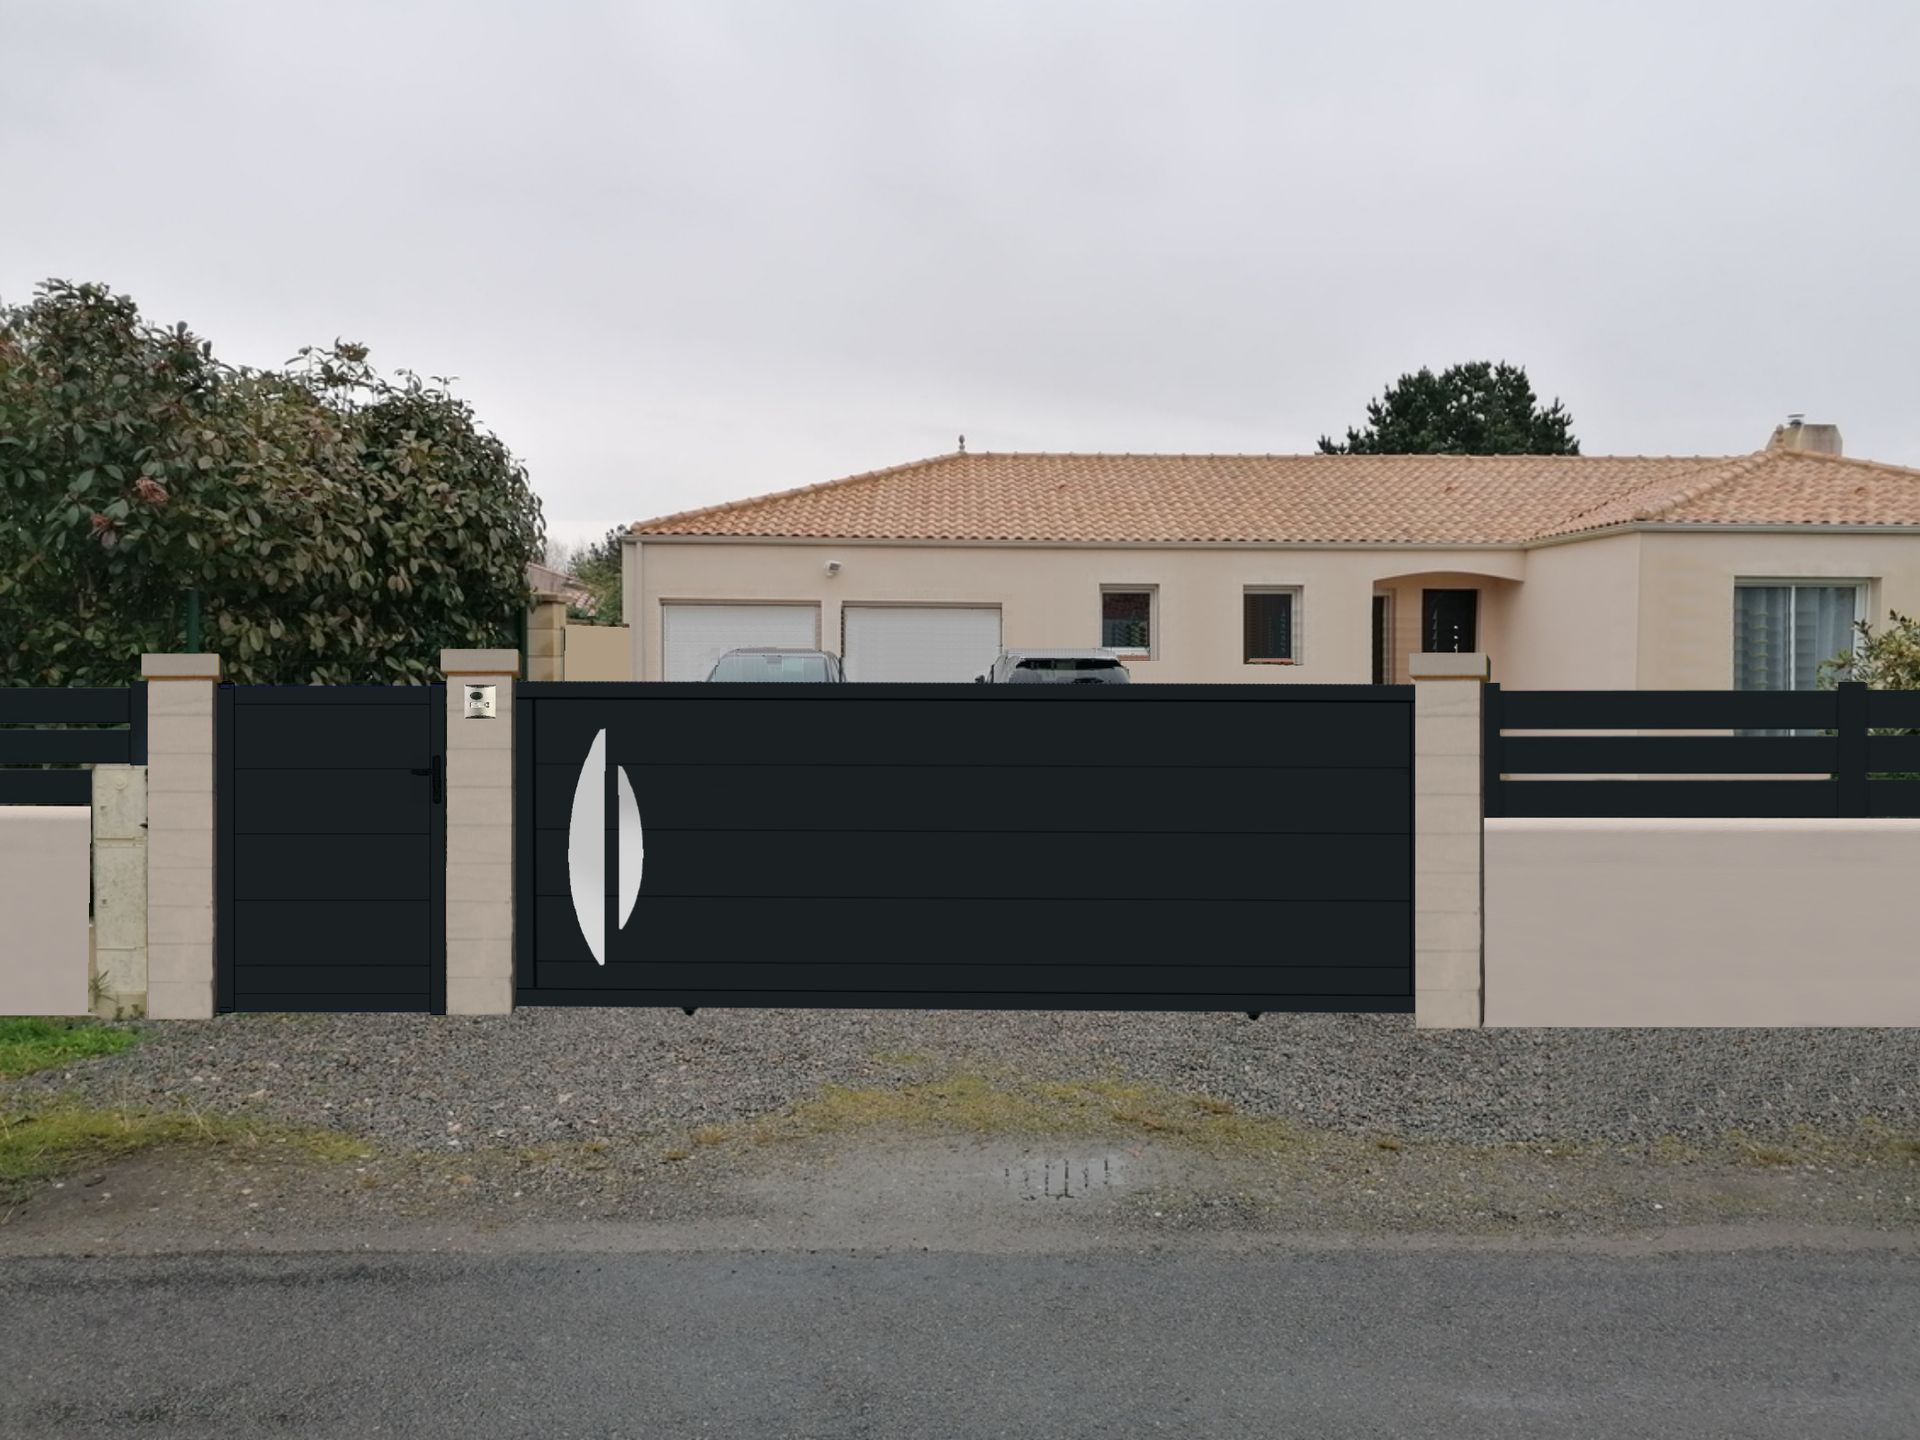 Proposition illustrée d'un portail noir et sa clôture sur muret